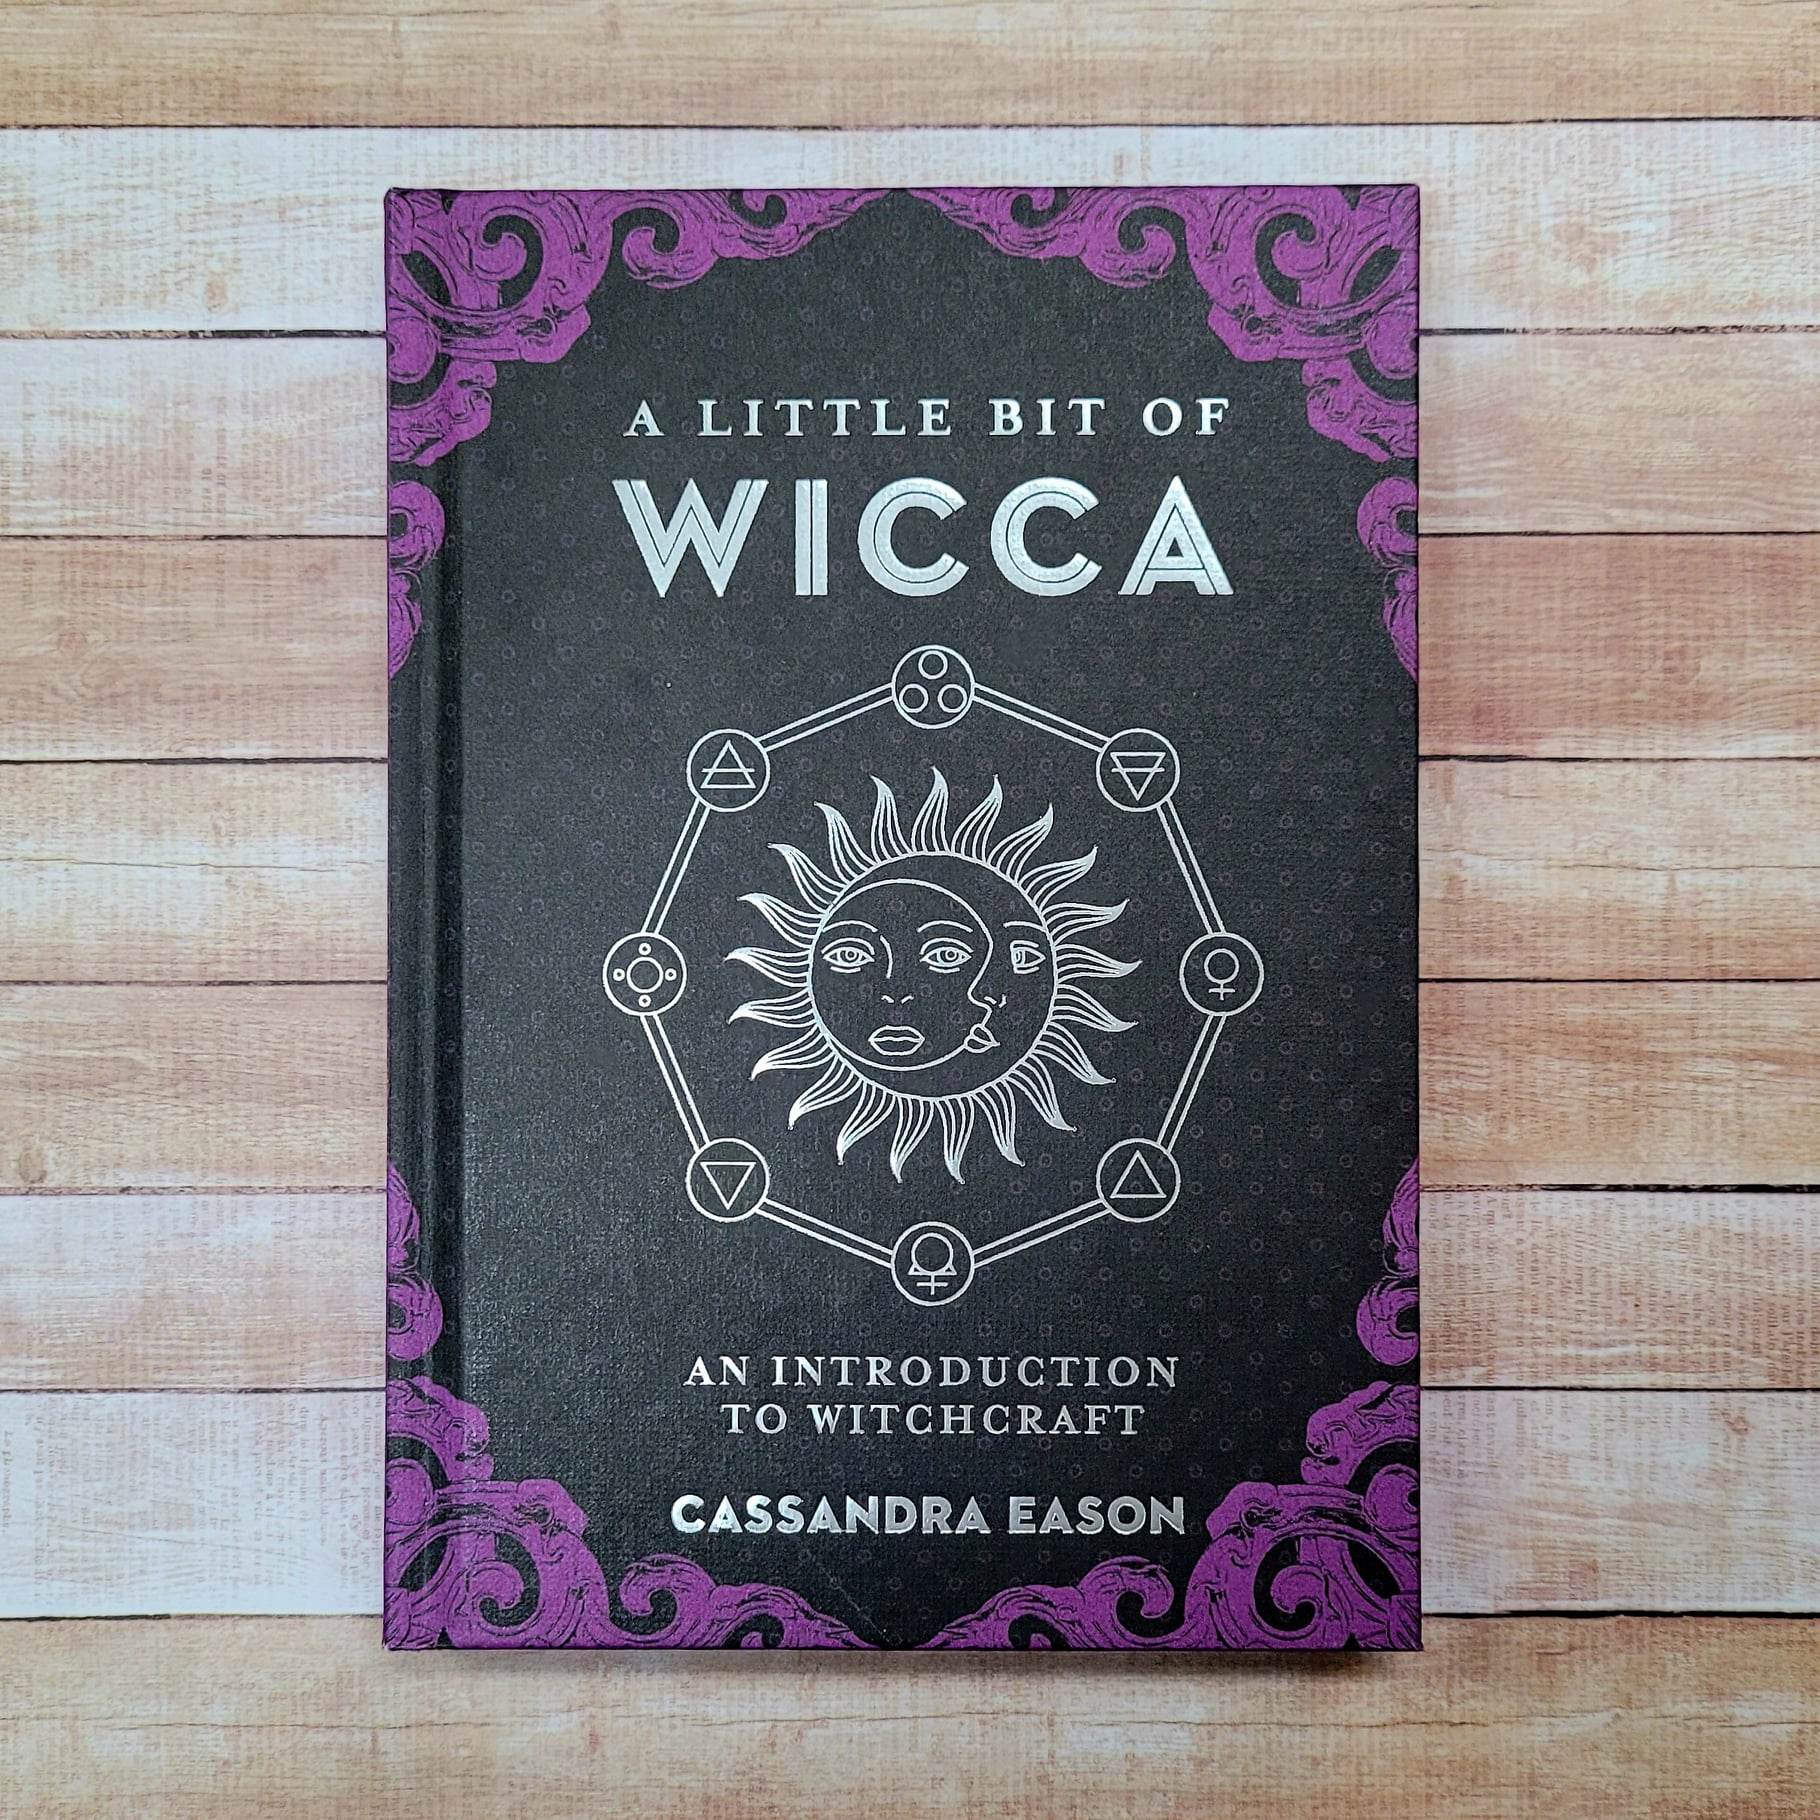 Book - Little bit of wicca